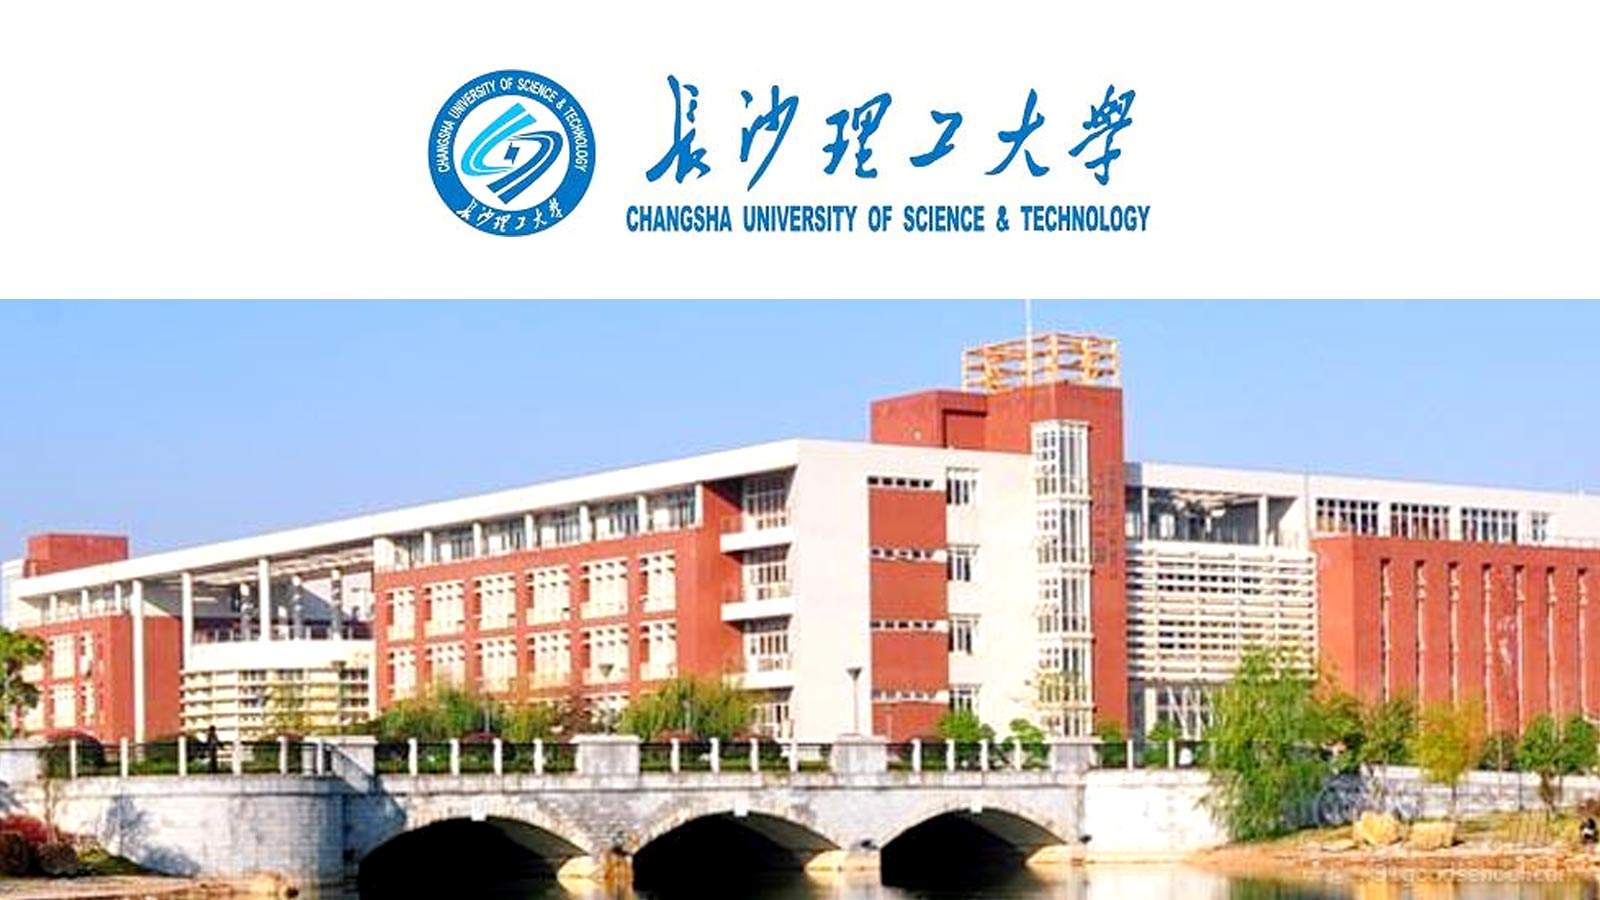 长沙理工大学的电气工程一级学科和上海电力大学一样,同为b